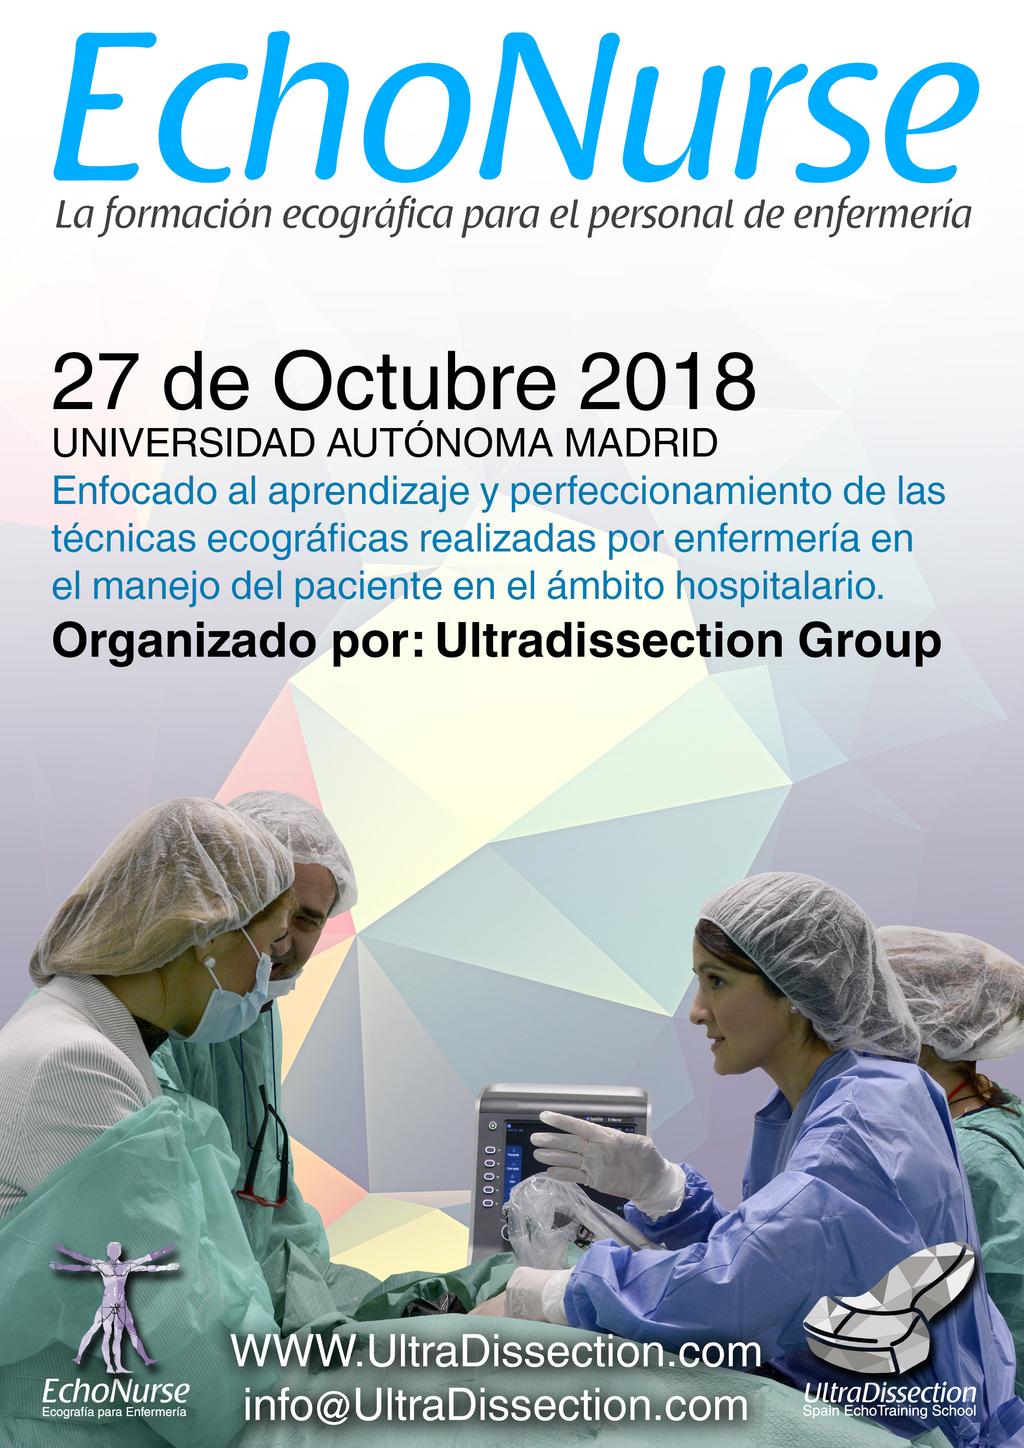 la formación ecográfica para el personal de enfermería 17 de febrero 2017 UNIVERSIDAD AUTÓNOMA MADRID Enfocado al aprendizaje y perfeccionamiento de las técnicas ecográficas para el manejo del